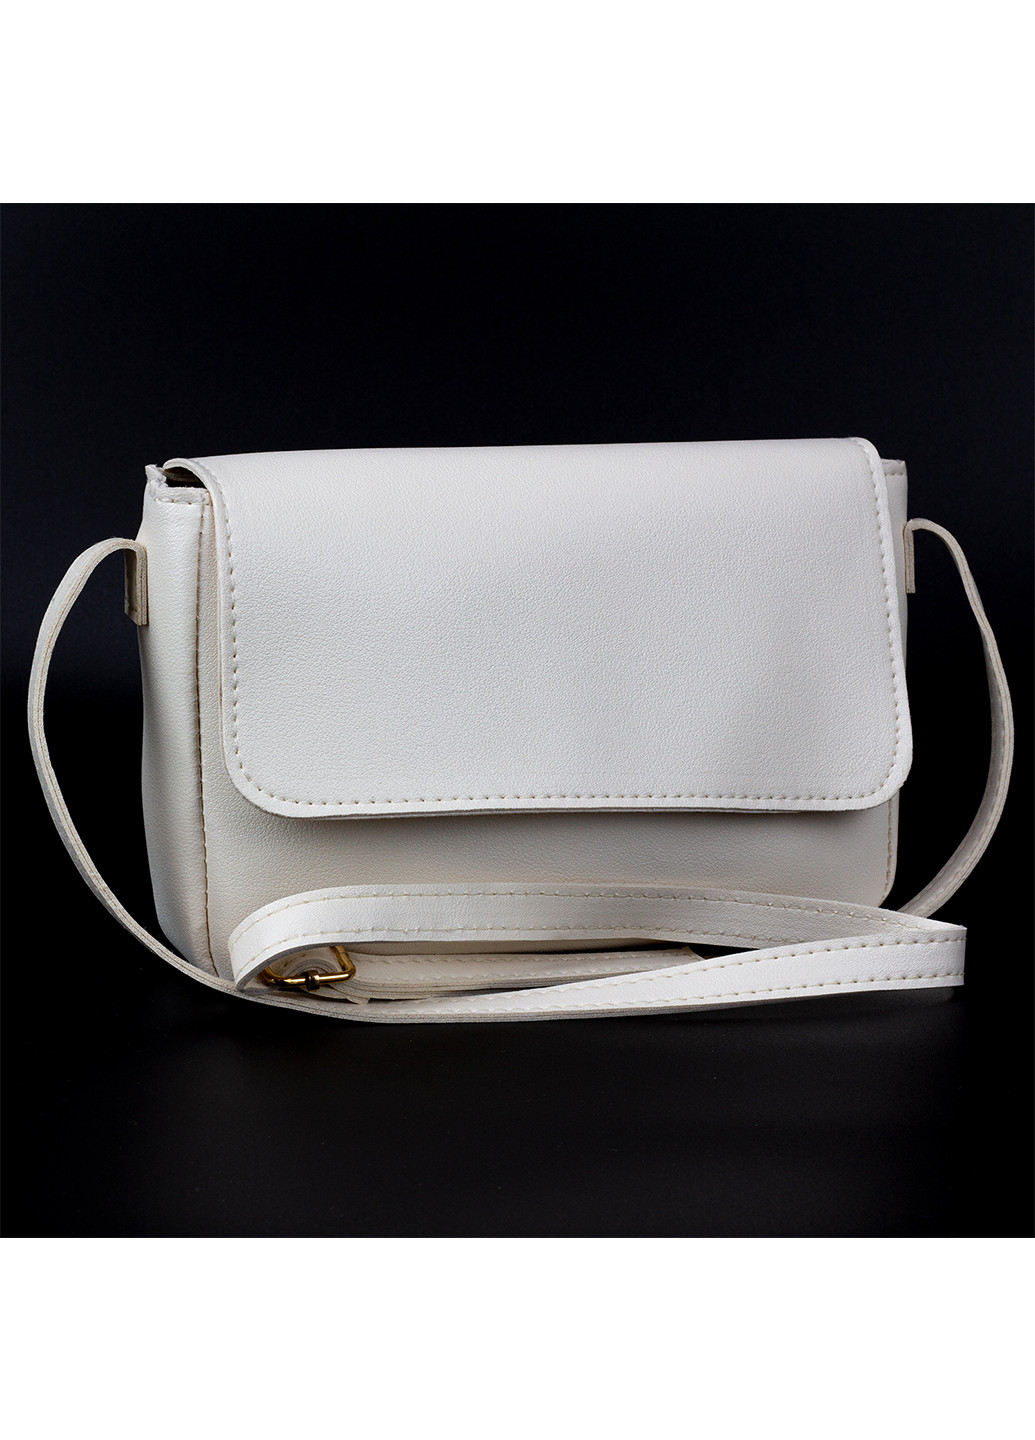 Женская небольшая сумка белая Corze ab14053 (260026880)